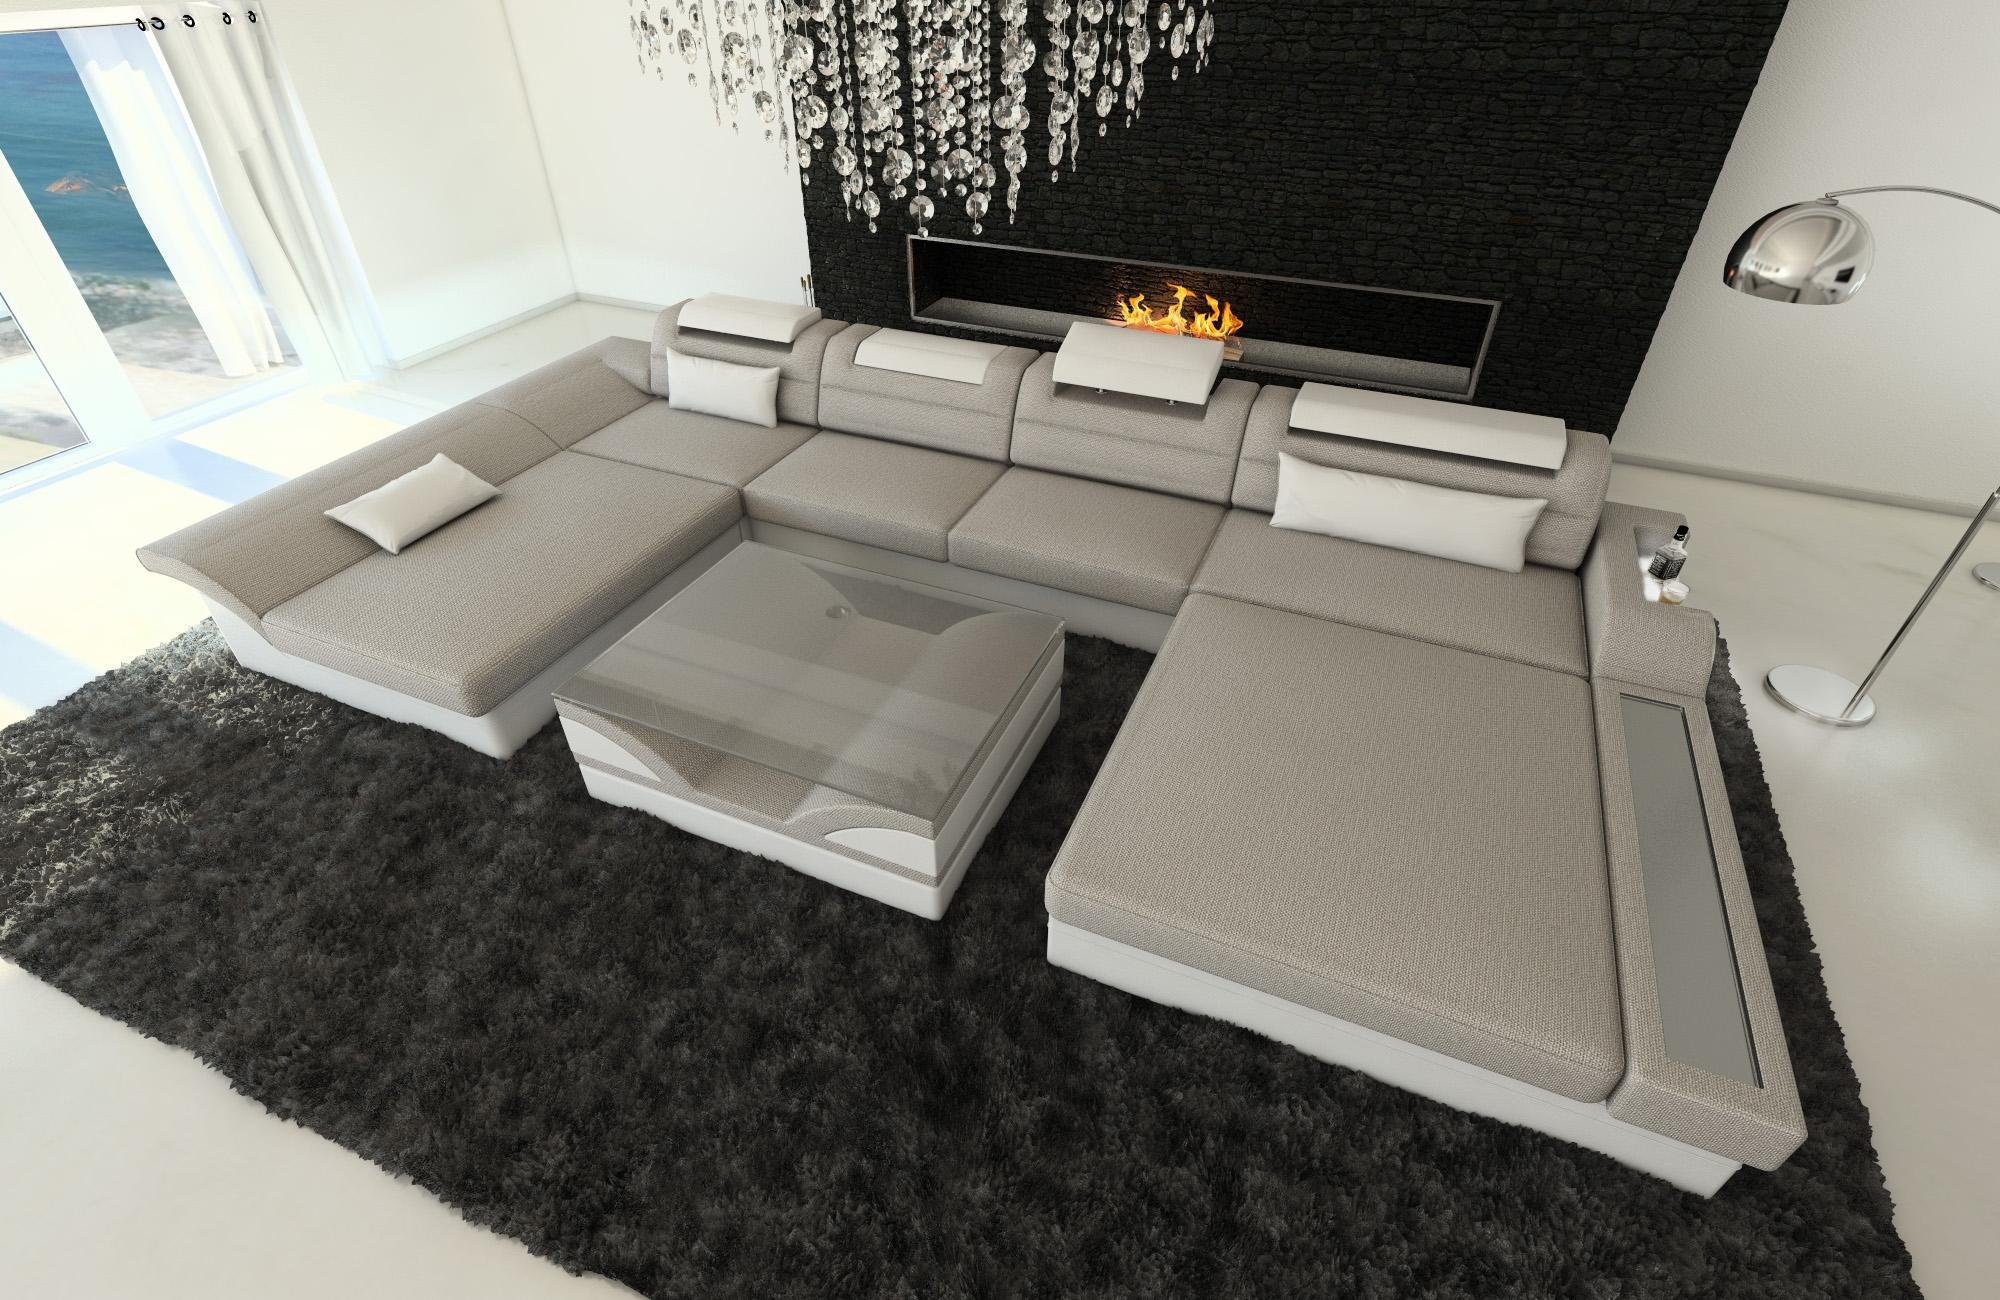 Sofa Wohnlandschaft Form H2 Bettfunktion, U Stoff Stoffsofa, Monza Dreams Polster mit Couch Designersofa Macchiato-Weiss LED, ausziehbare